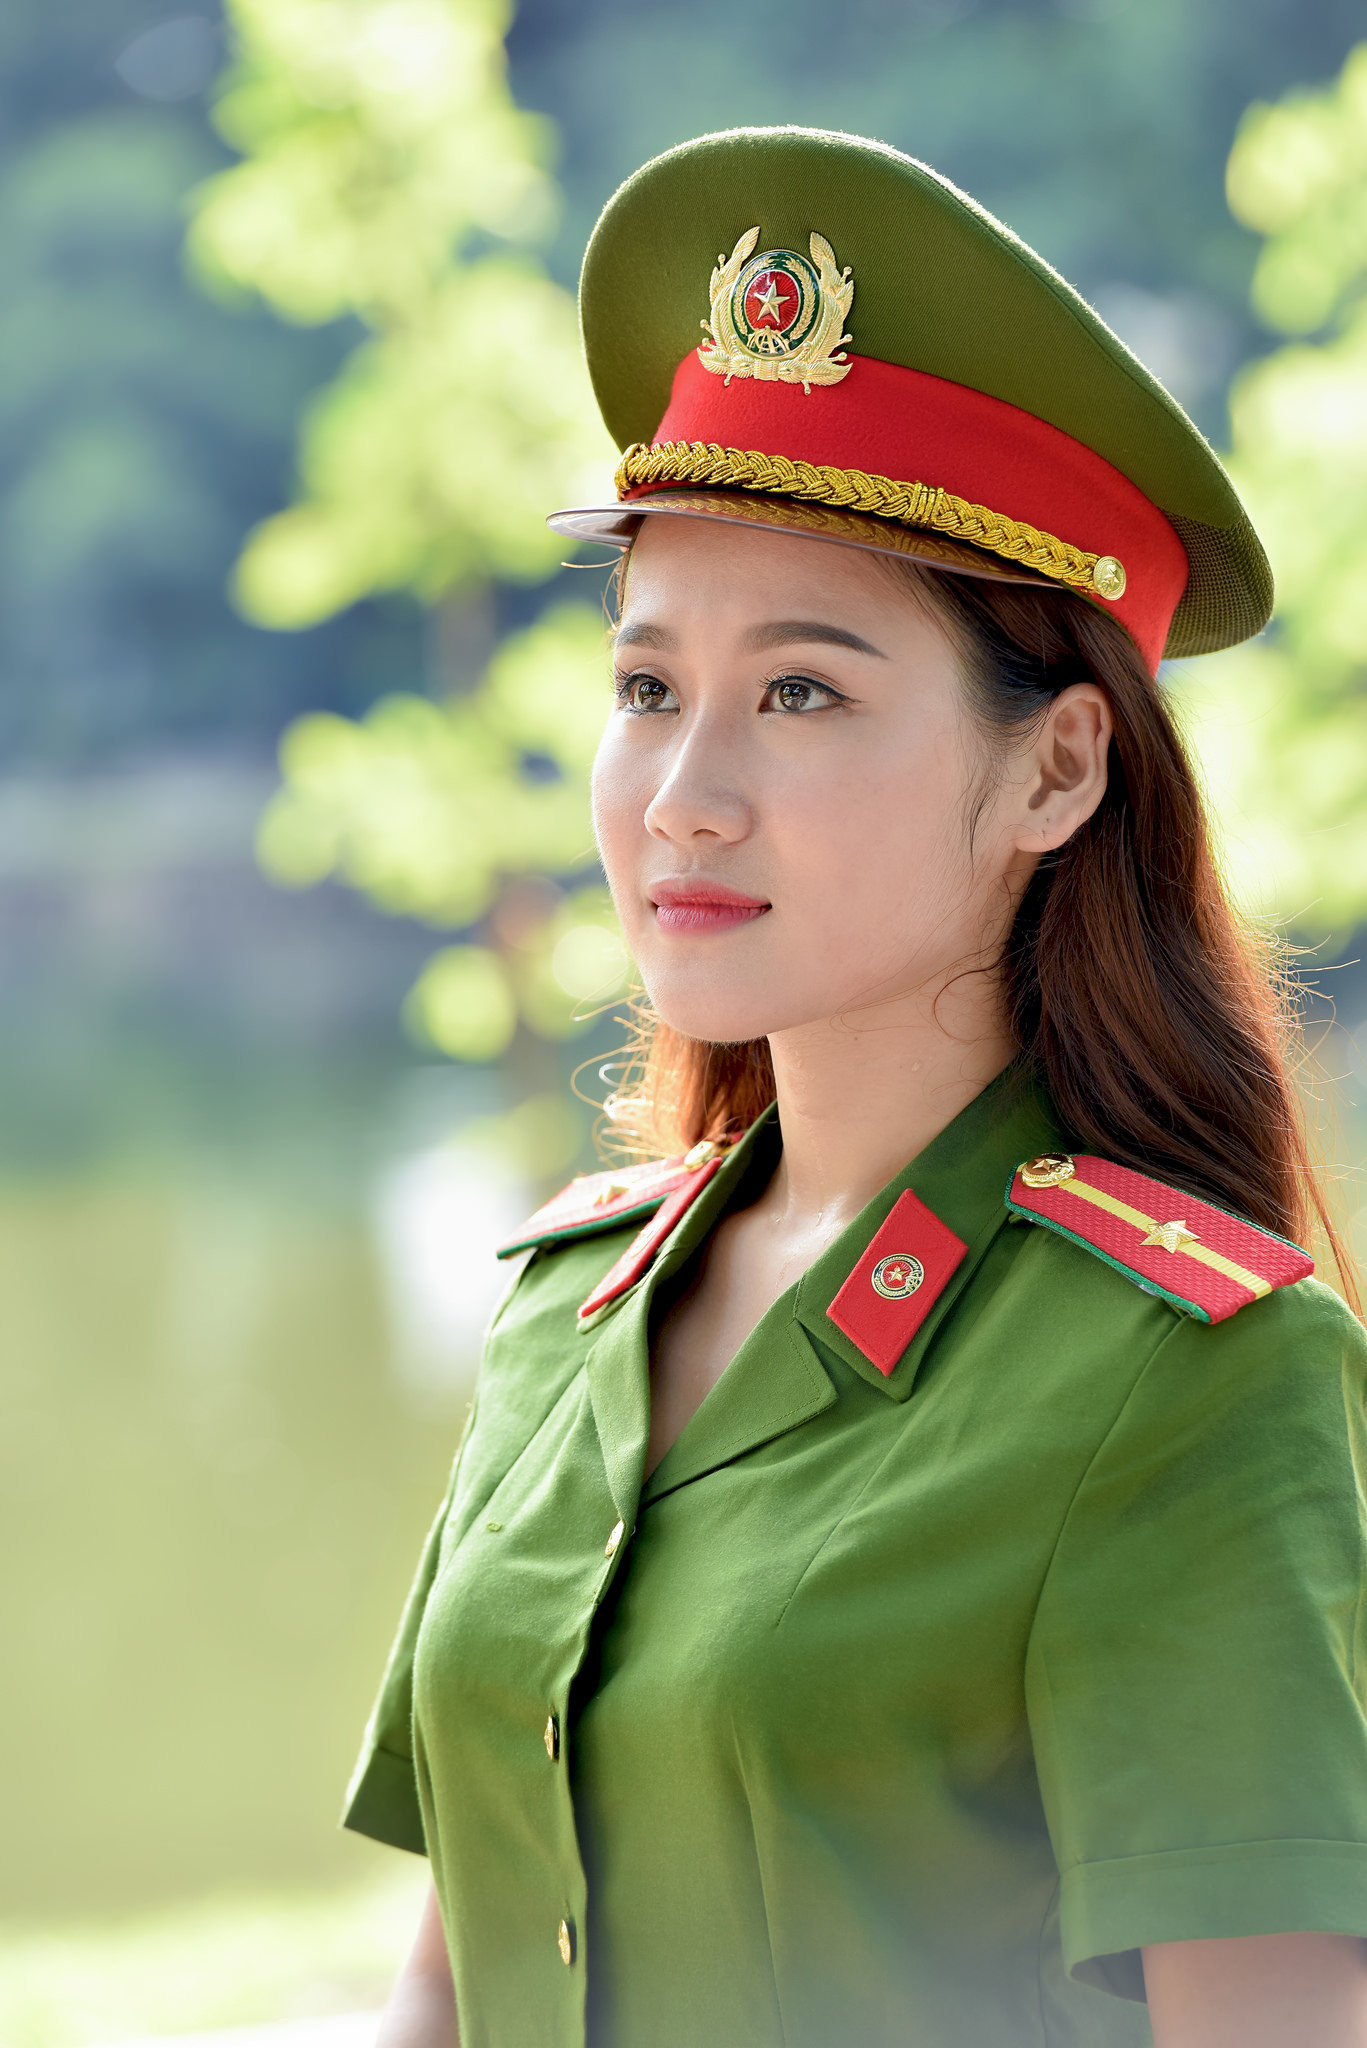 越南女兵,看看和我们差异大吗?